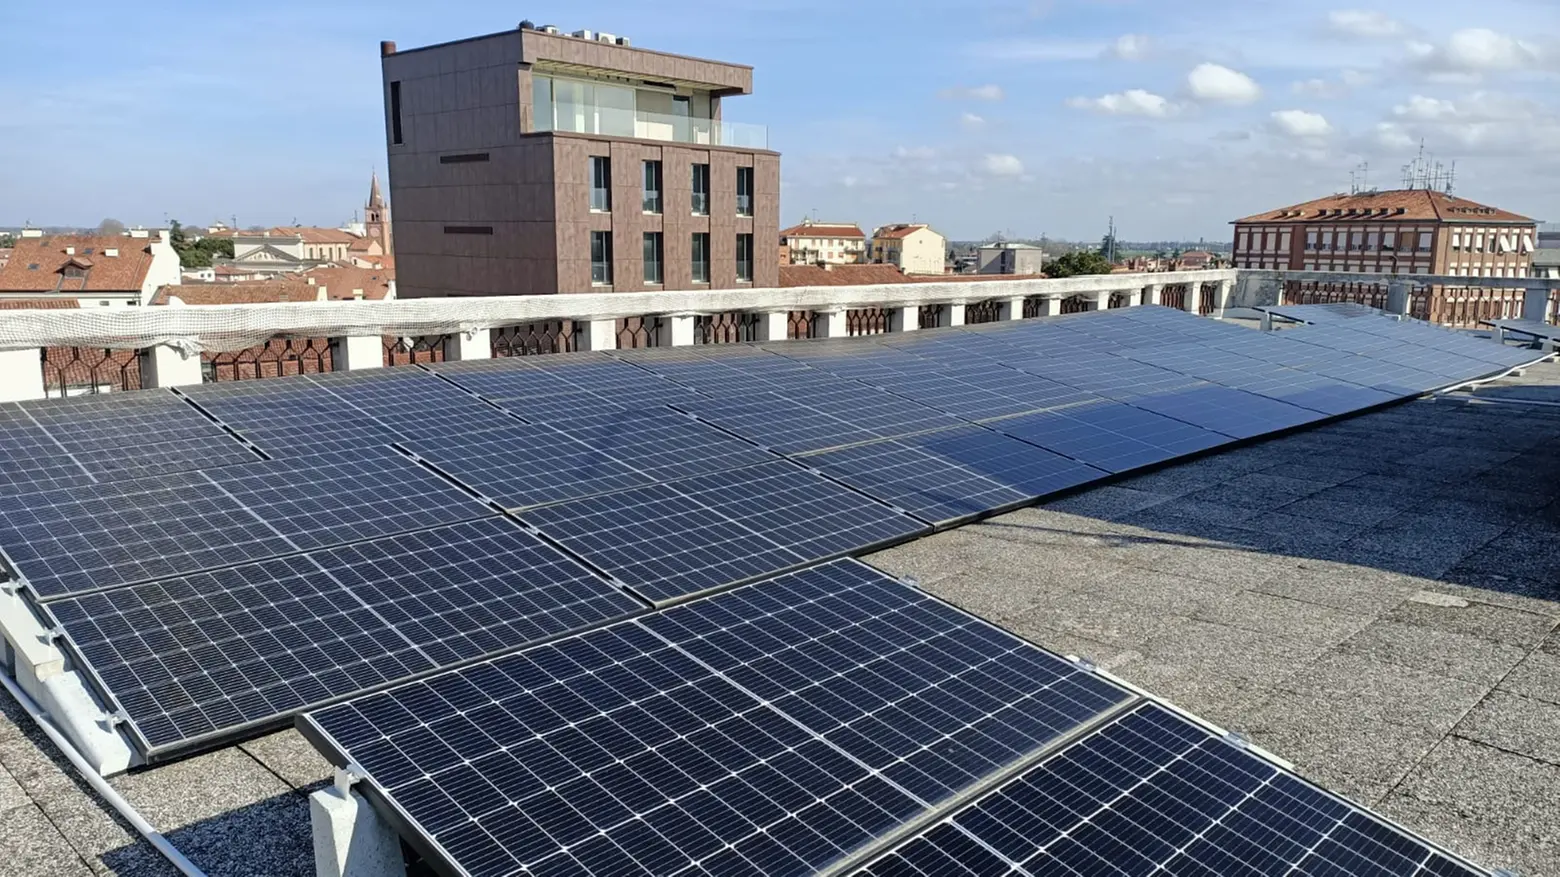 l'impianto fotovoltaio installato nella sede delle poste a Rovigo